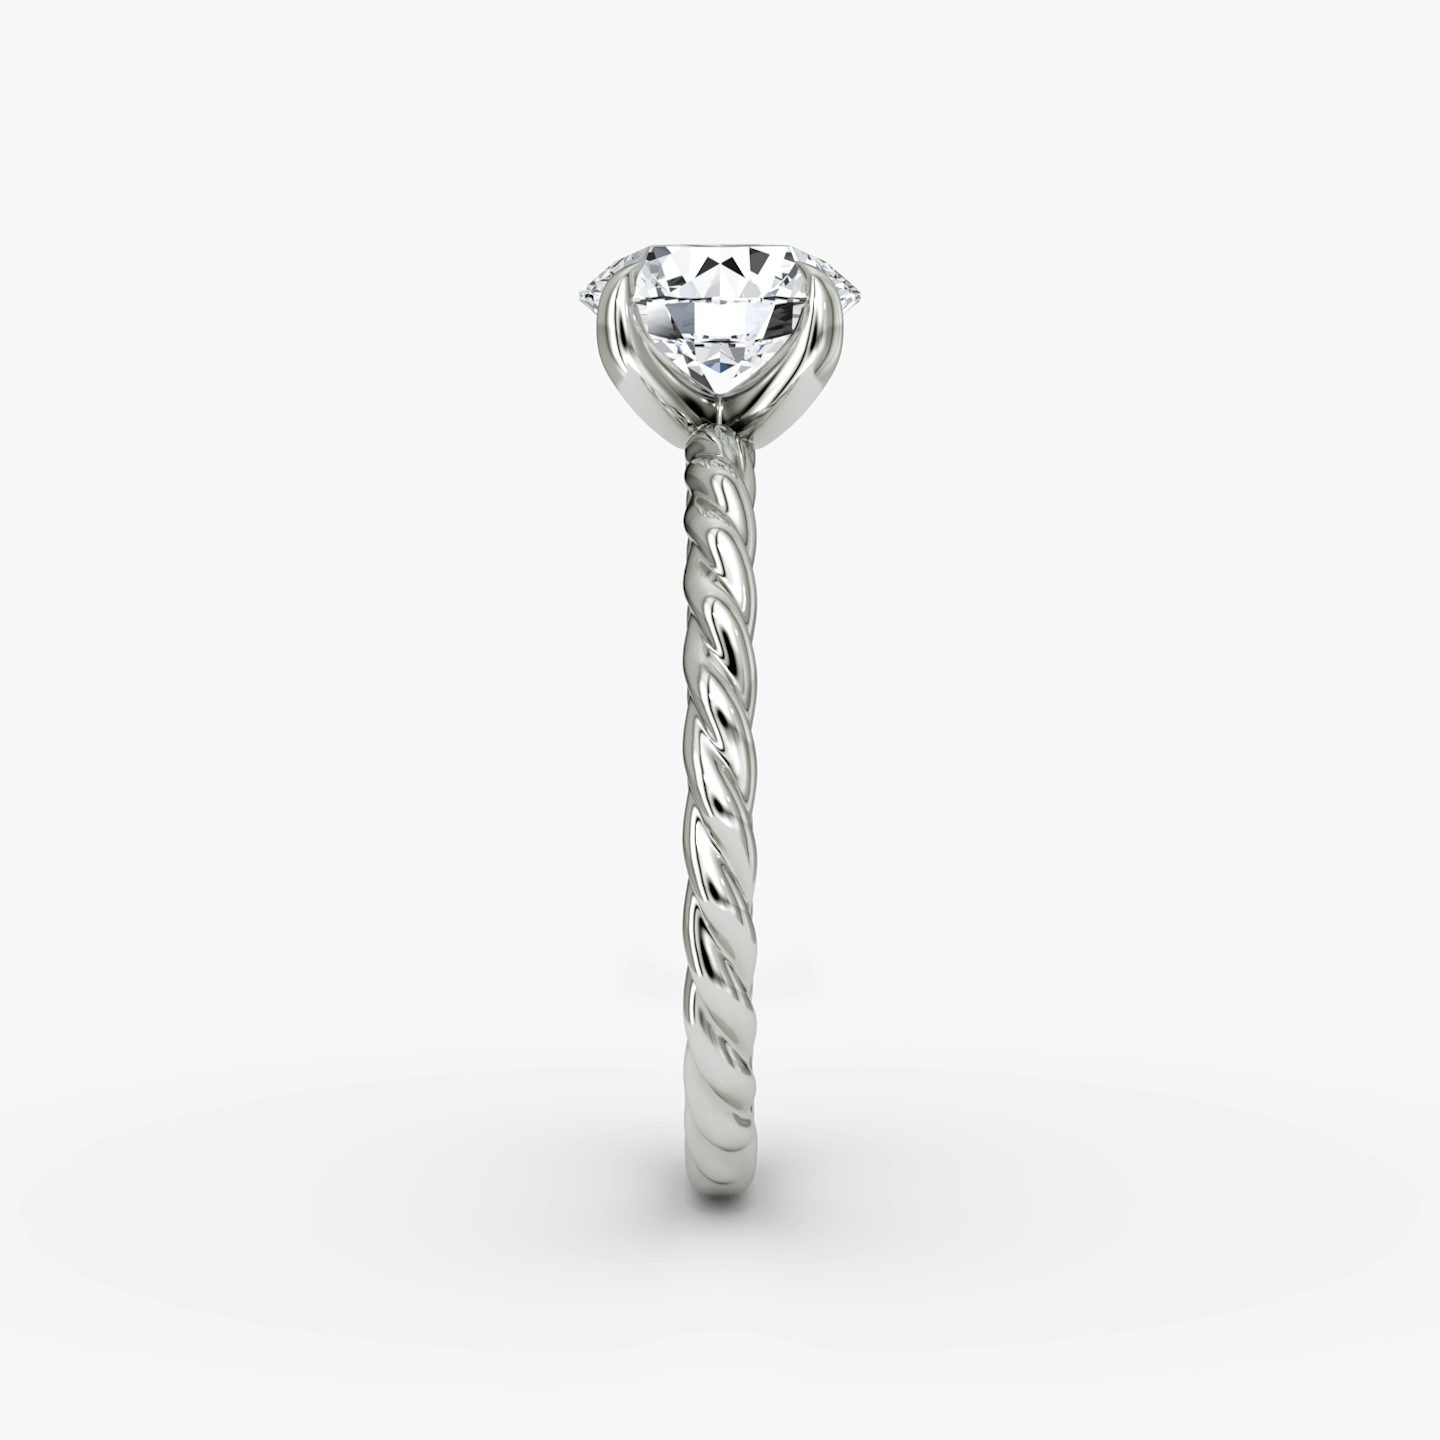 The Classic Rope | Round Brilliant | Platinum | Carat weight: 1 | Diamond orientation: vertical